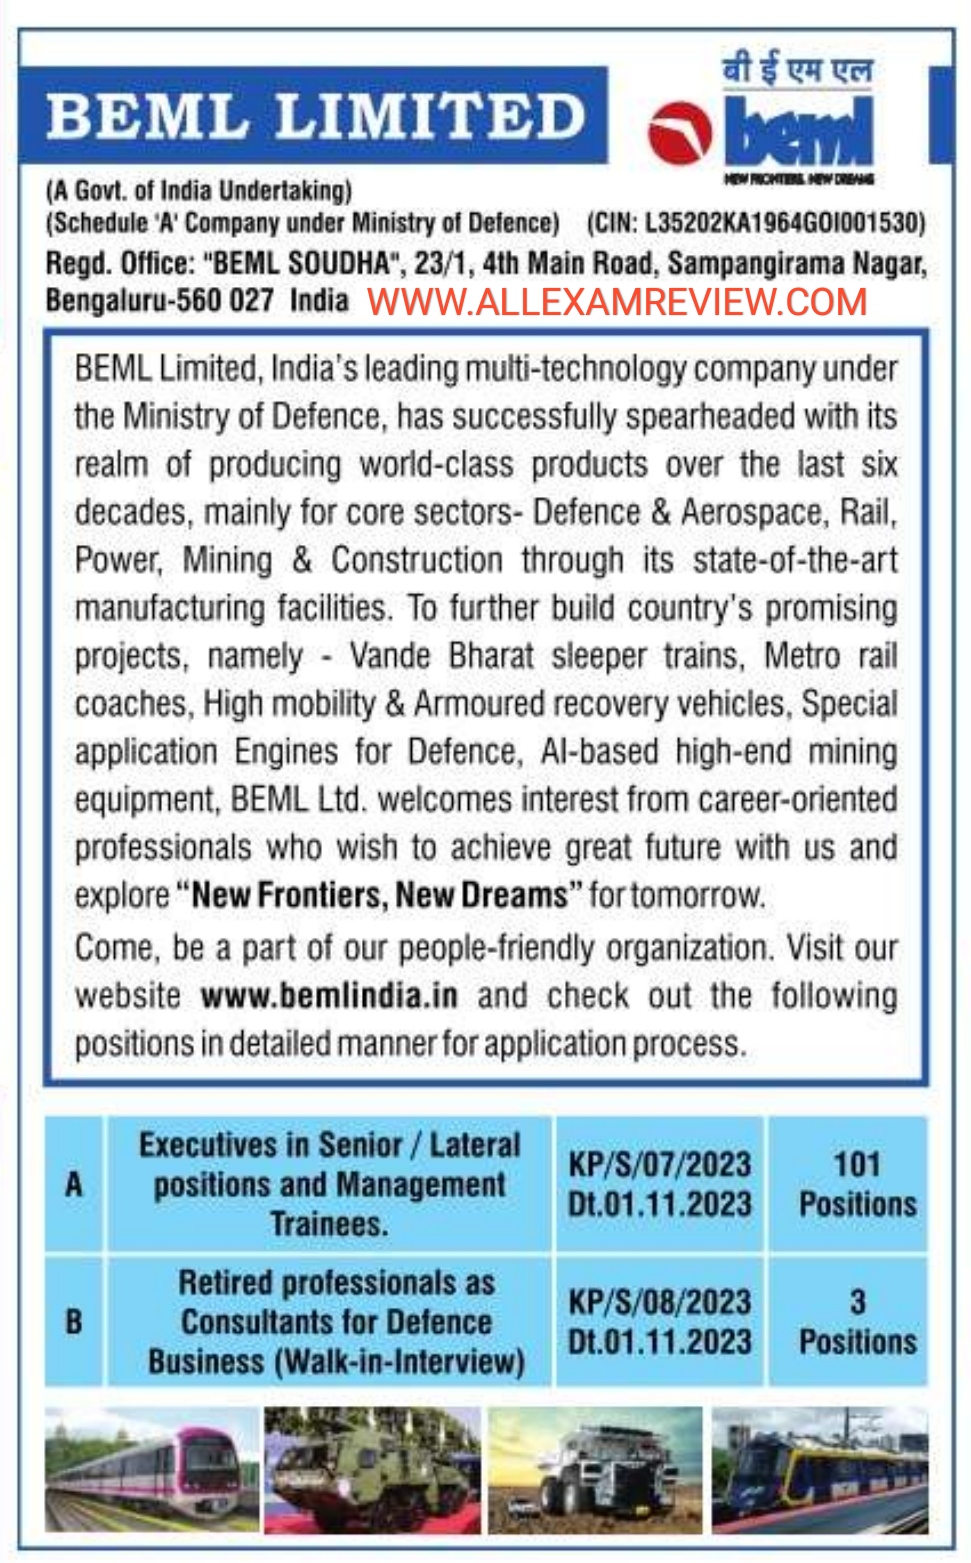 BEML MT Recruitment 2023